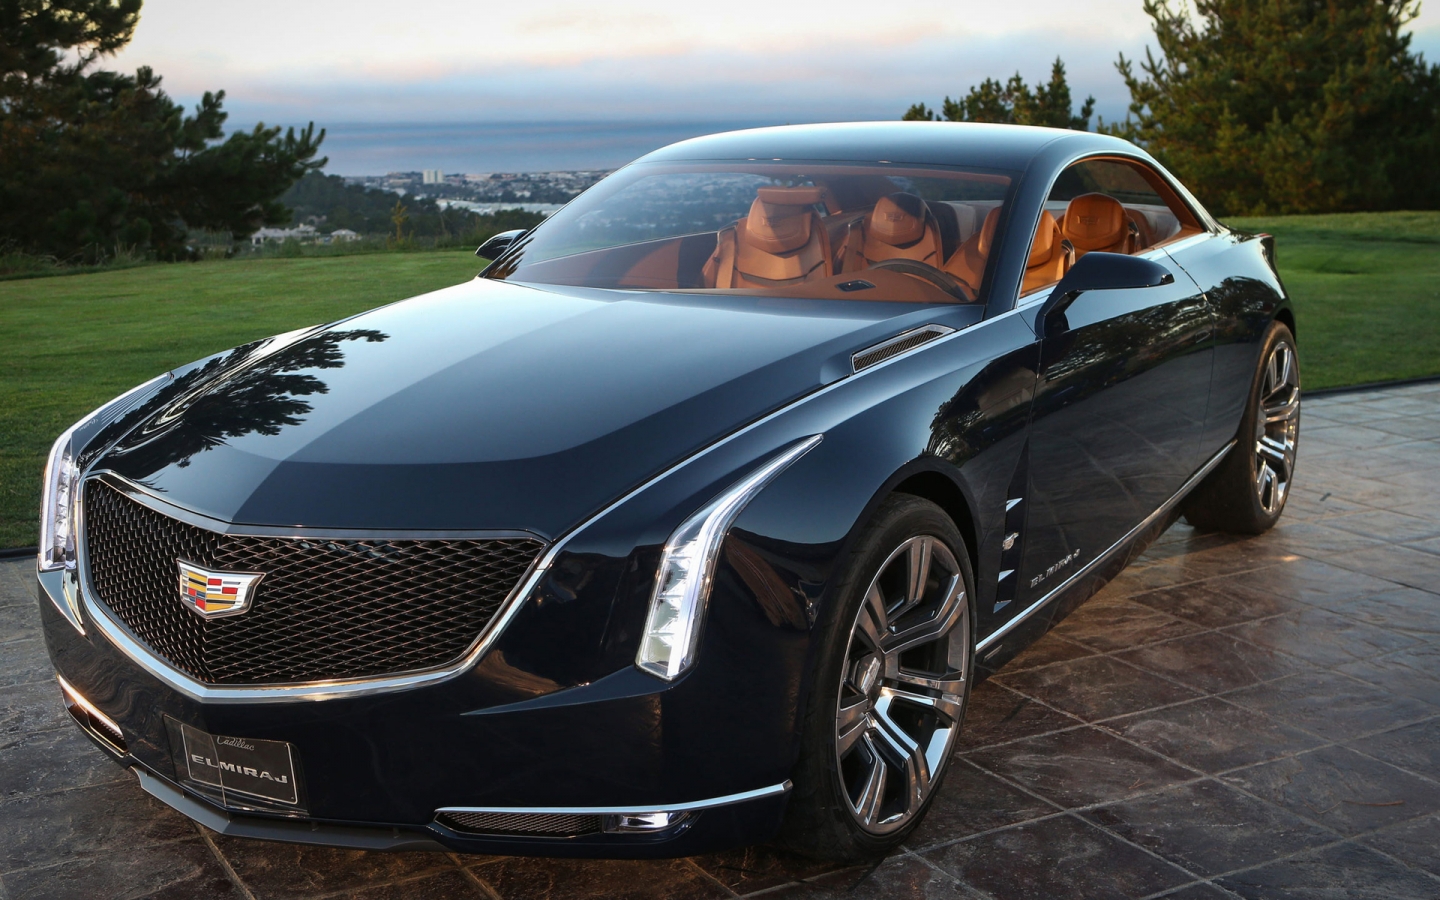 Cadillac Elmiraj Coupe for 1440 x 900 widescreen resolution